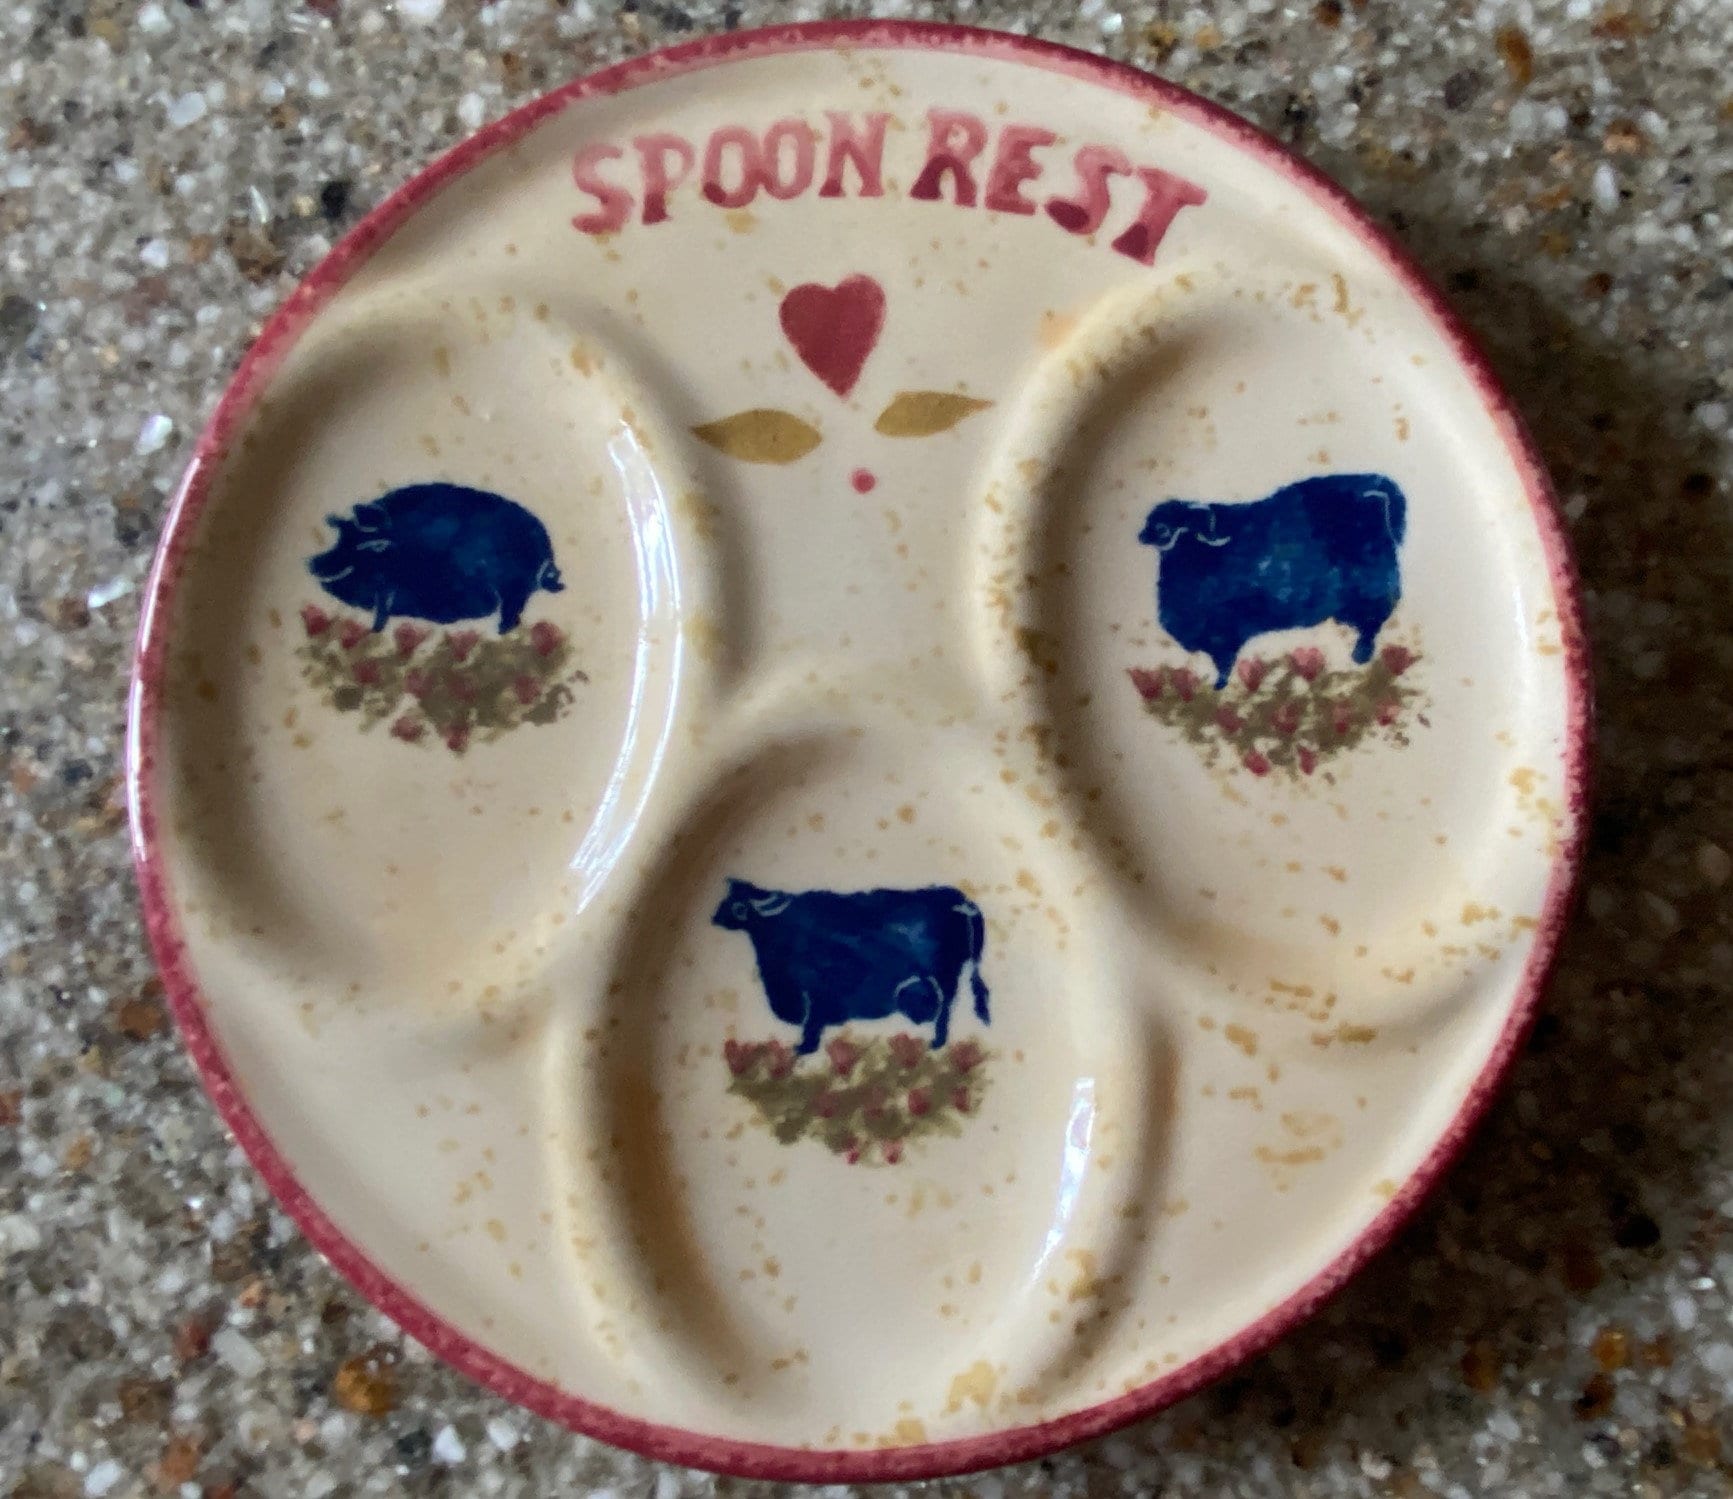 cow spoon rest – Eeksie Peeksie Ceramics